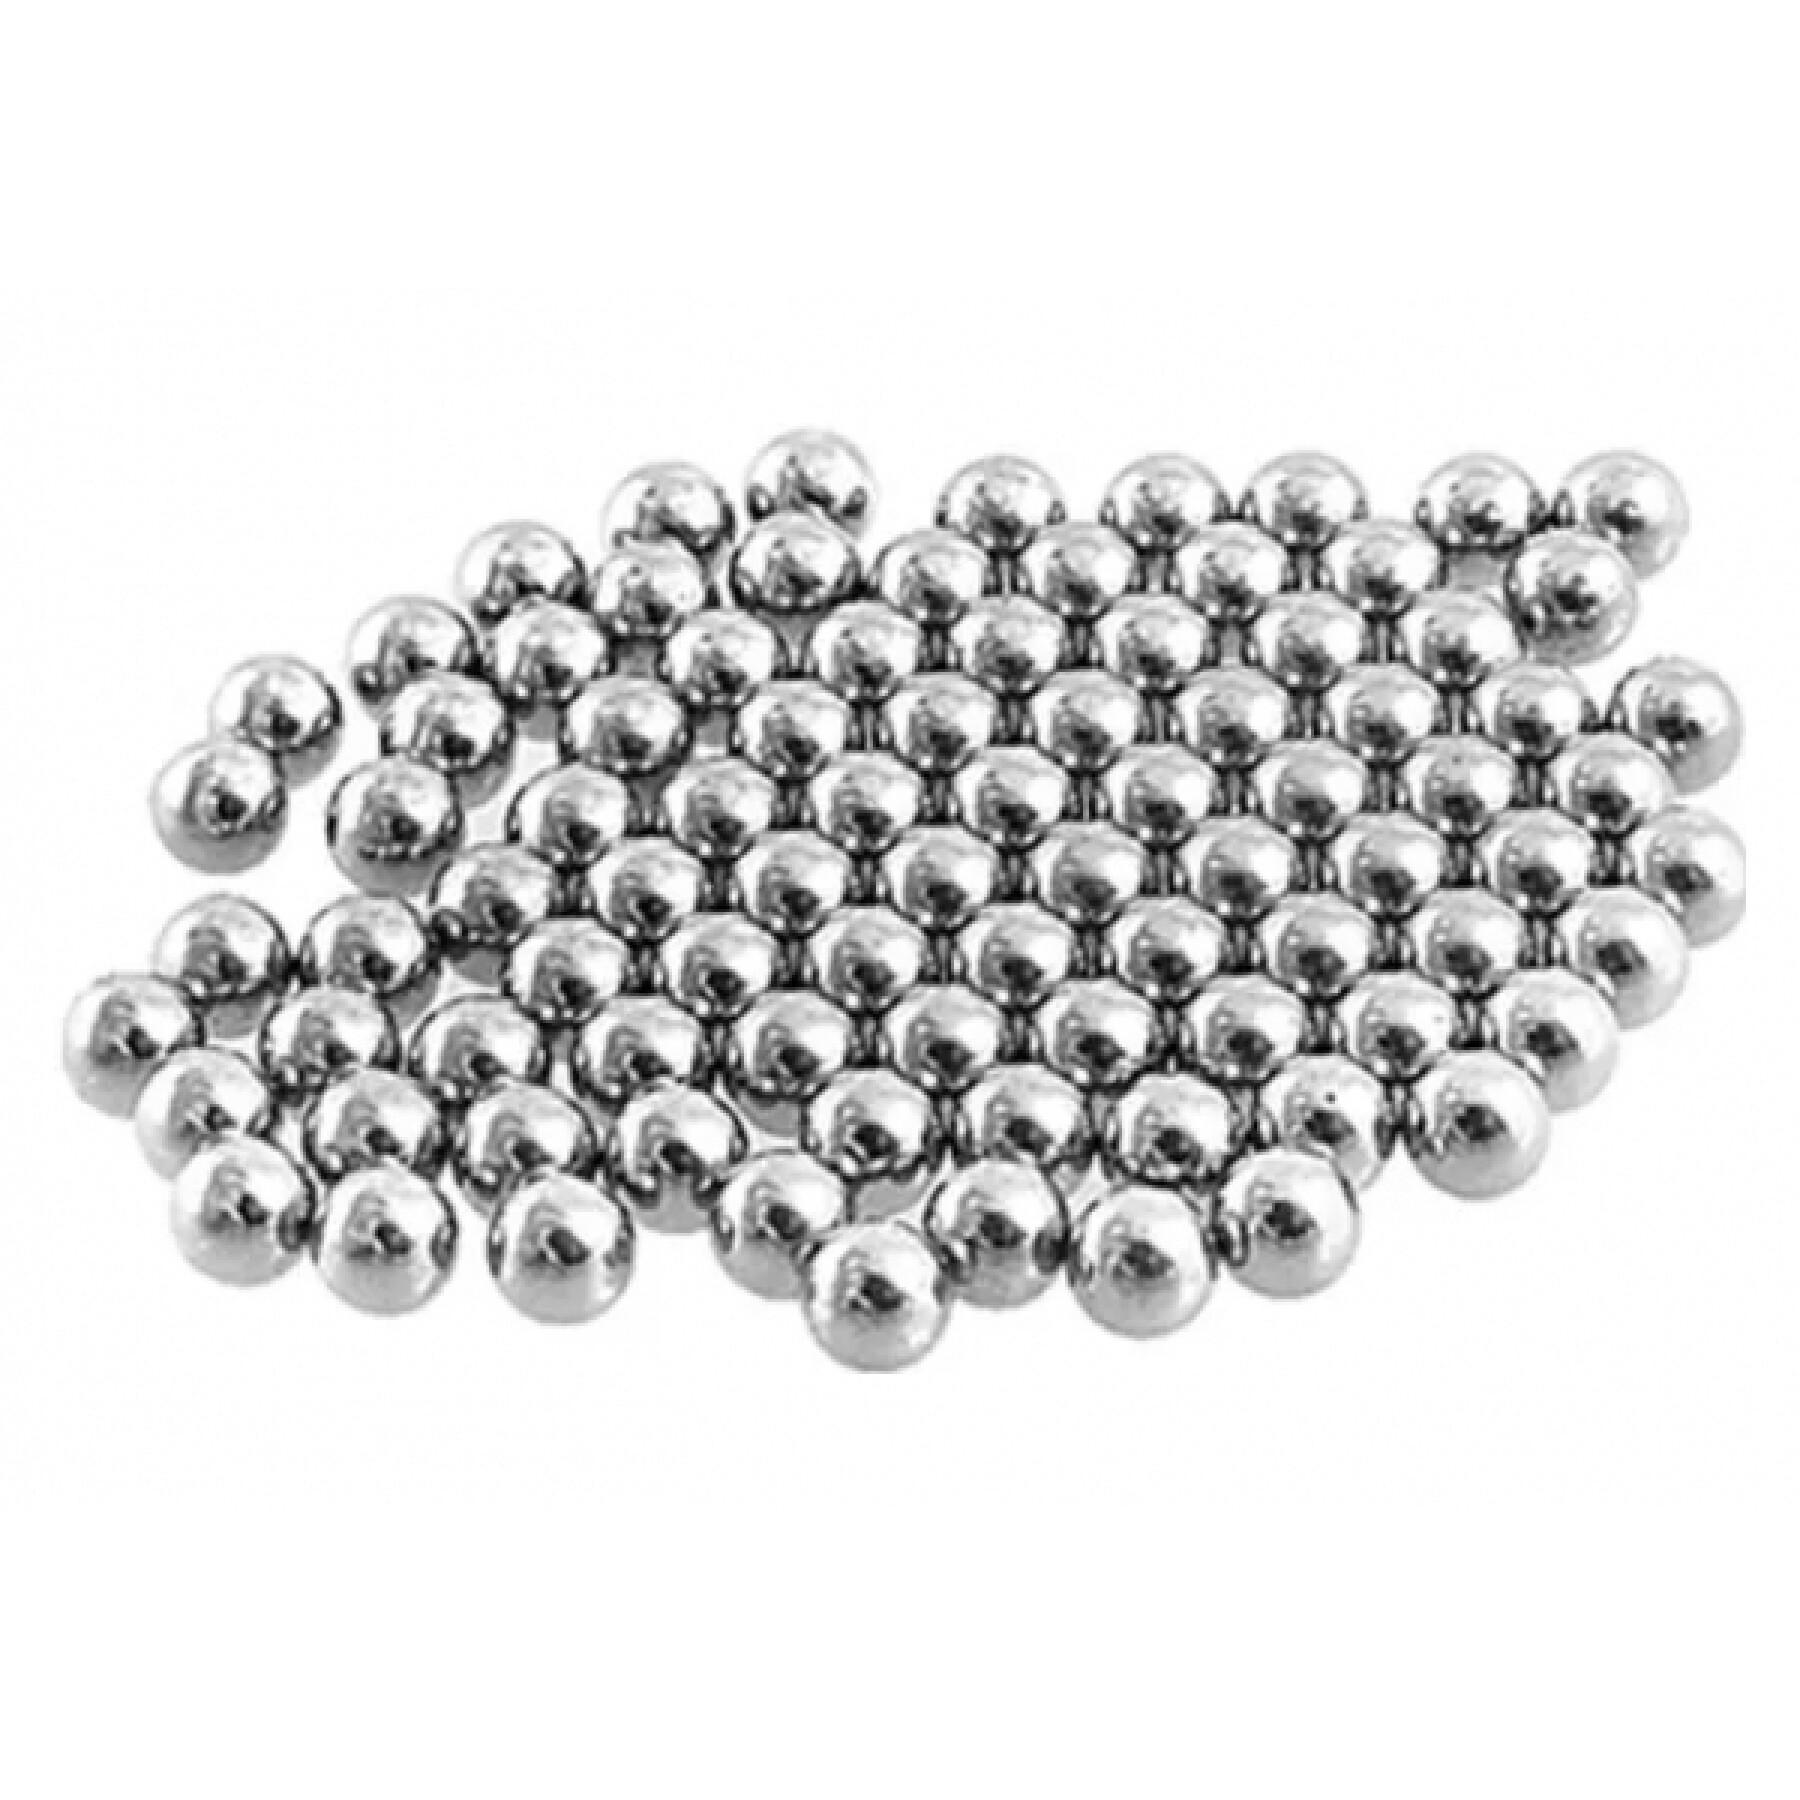 Batch of 100 bearing balls Elvedes 3/16"